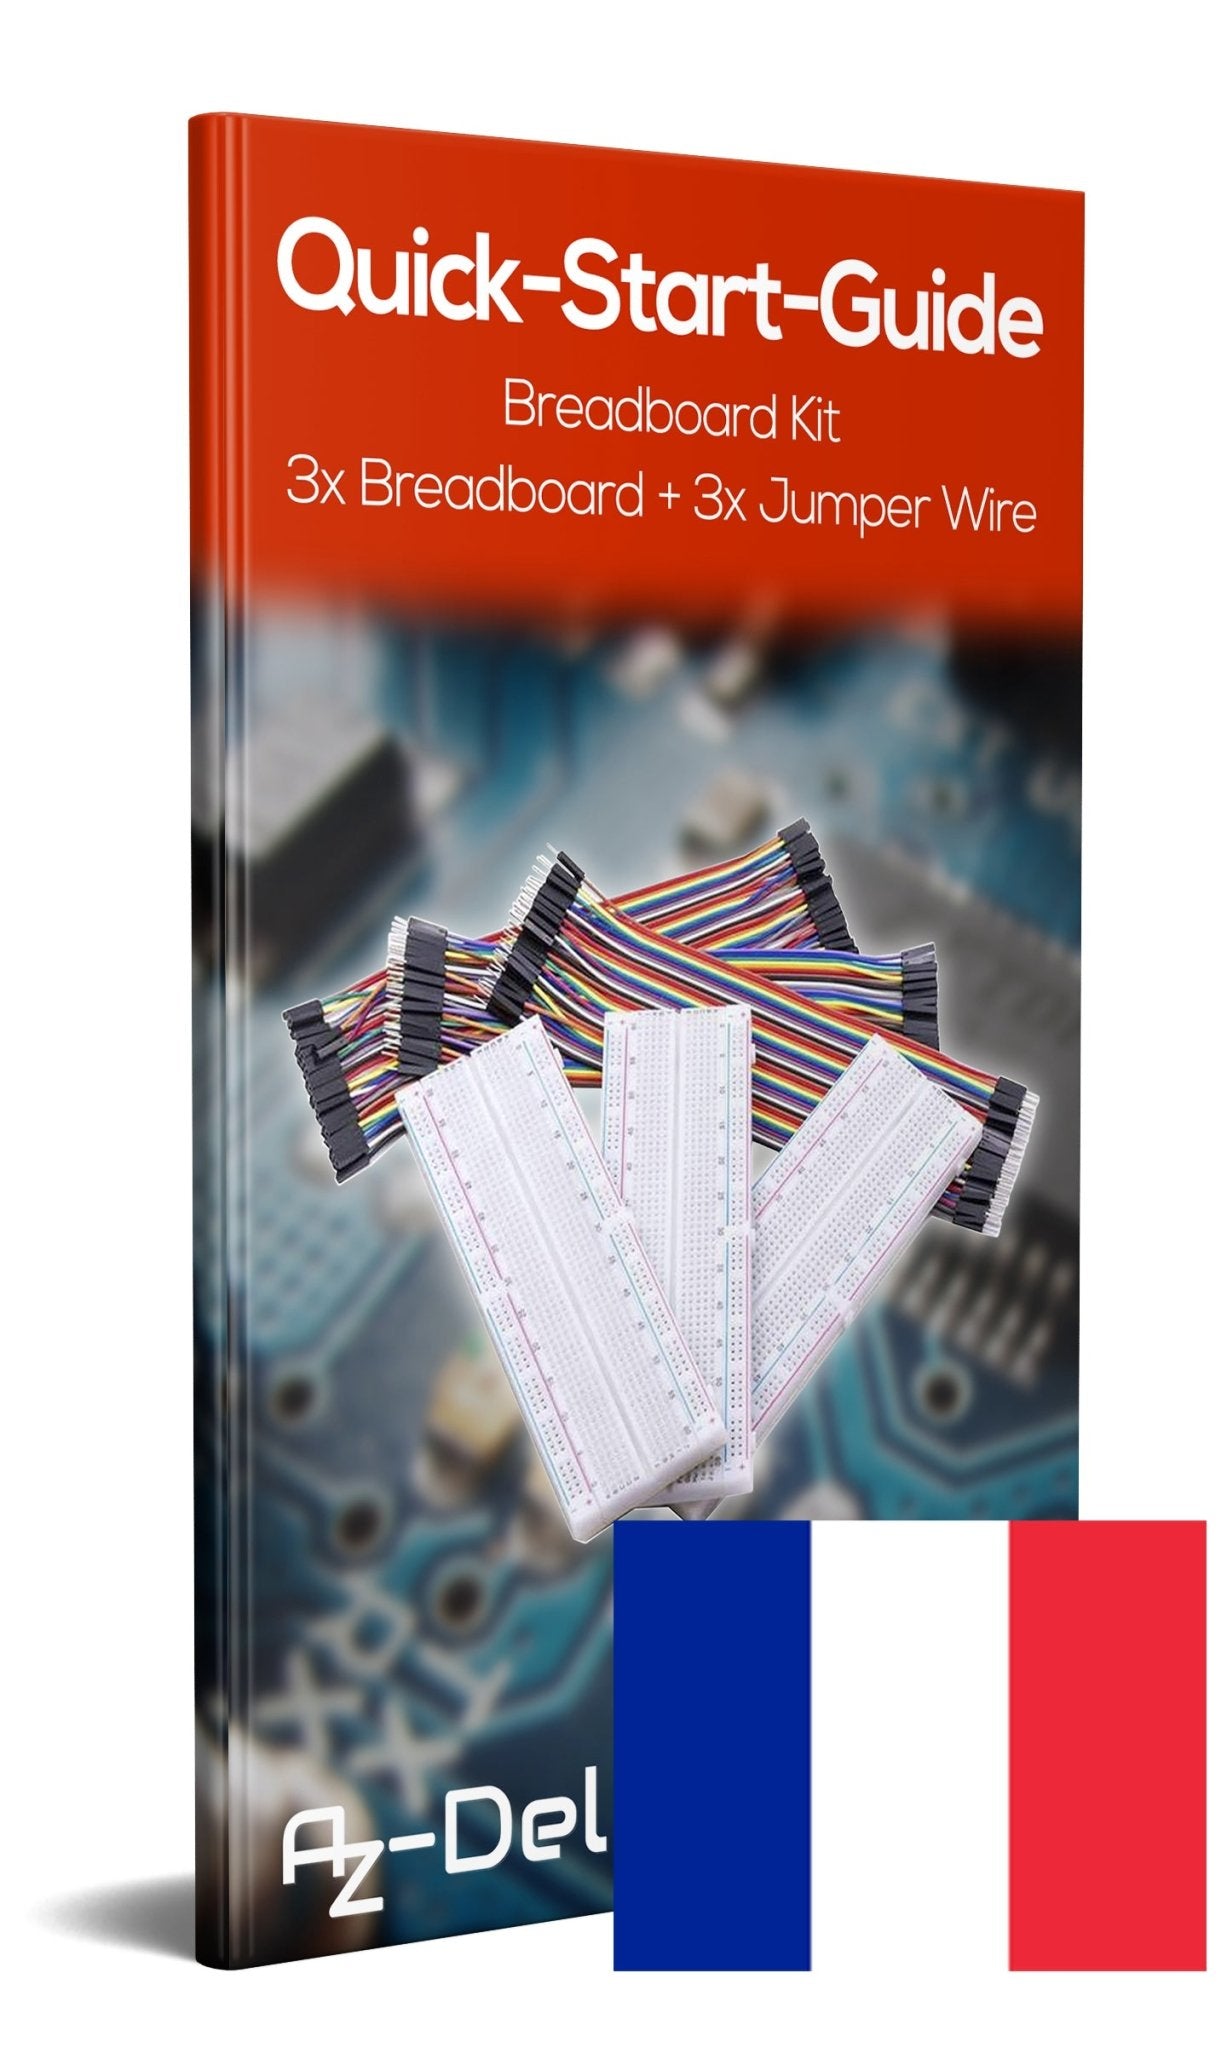 Breadboard Kit - 3x Jumper Wire m2m/f2m/f2f + 3er Set MB102 Breadbord - AZ-Delivery